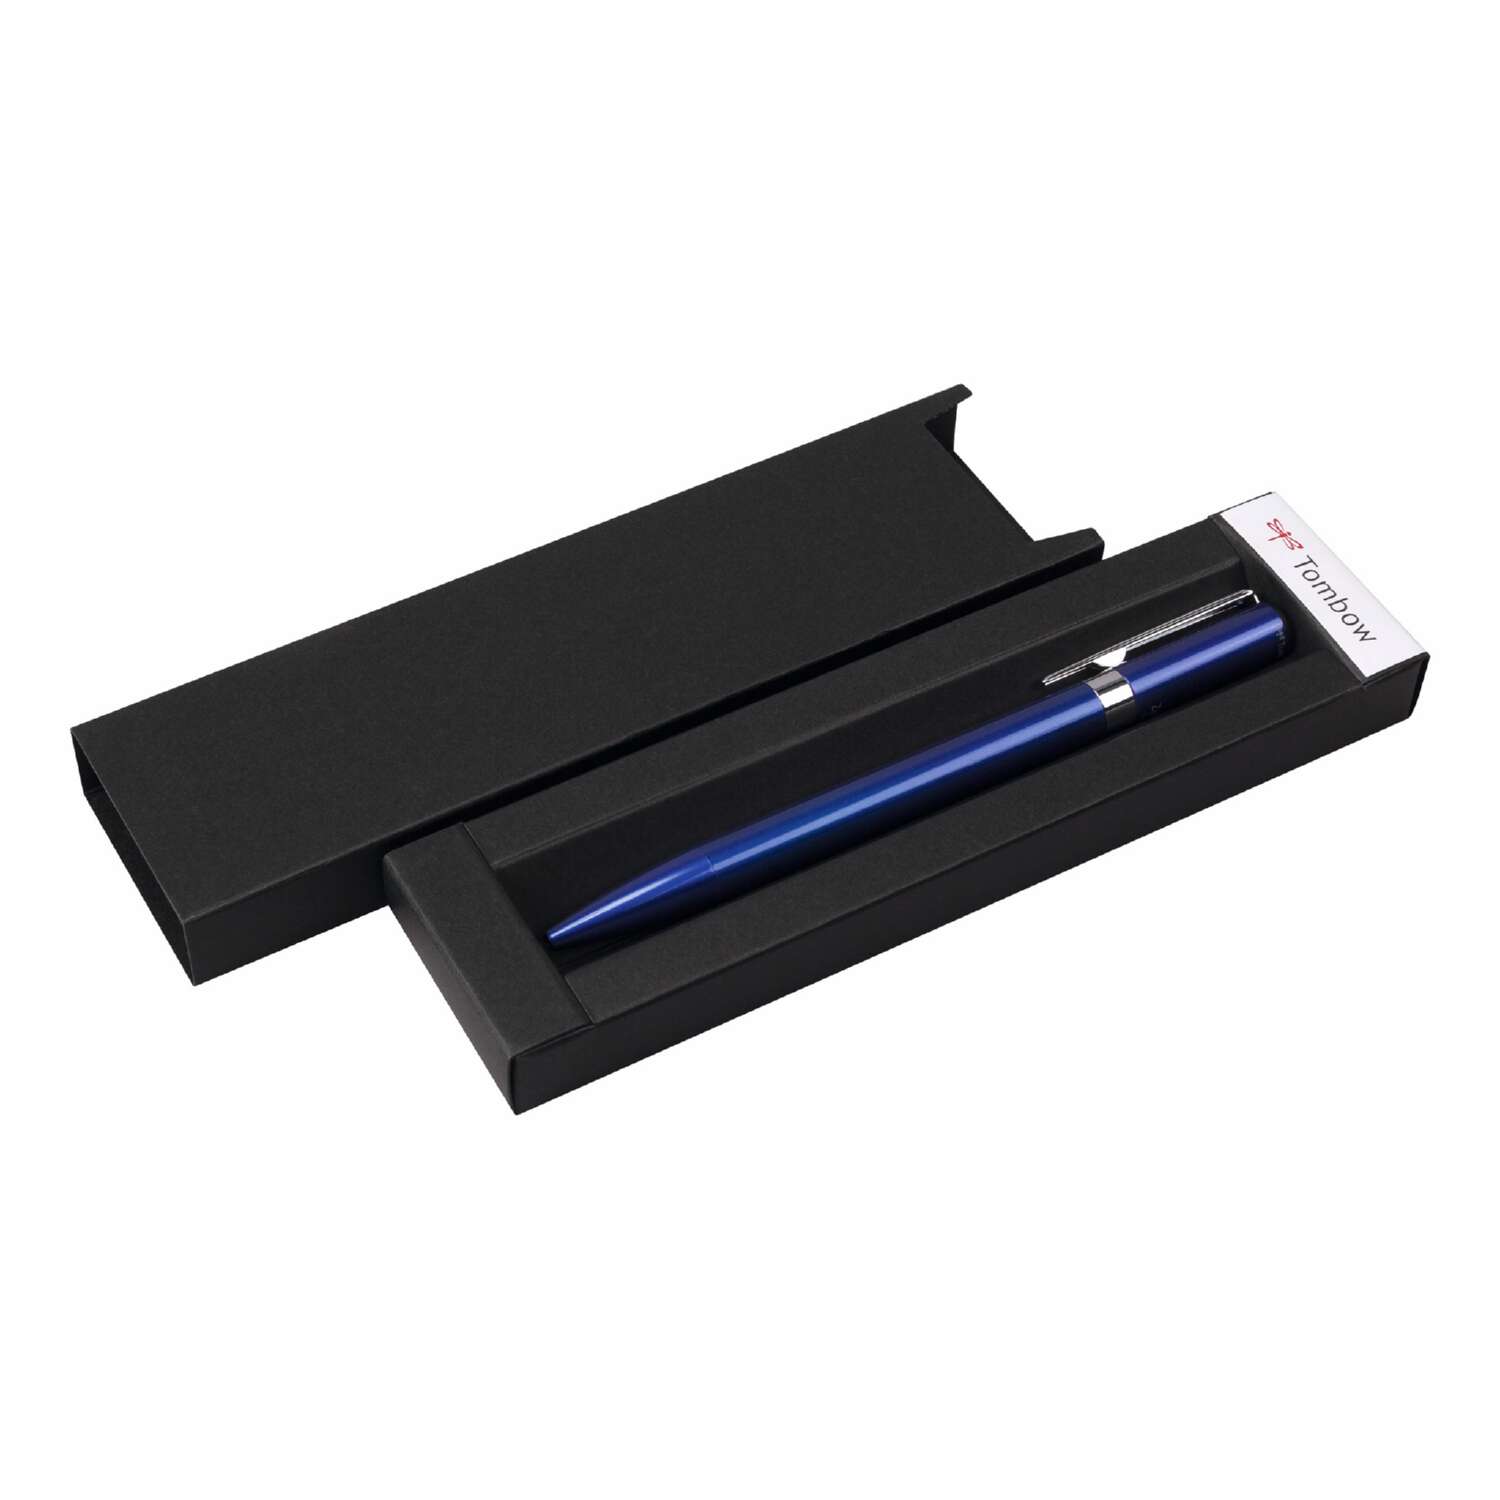 Ручка шариковая Tombow ZOOM L105 City черная корпус синий линия 0.7 мм подарочная упаковка - фото 1